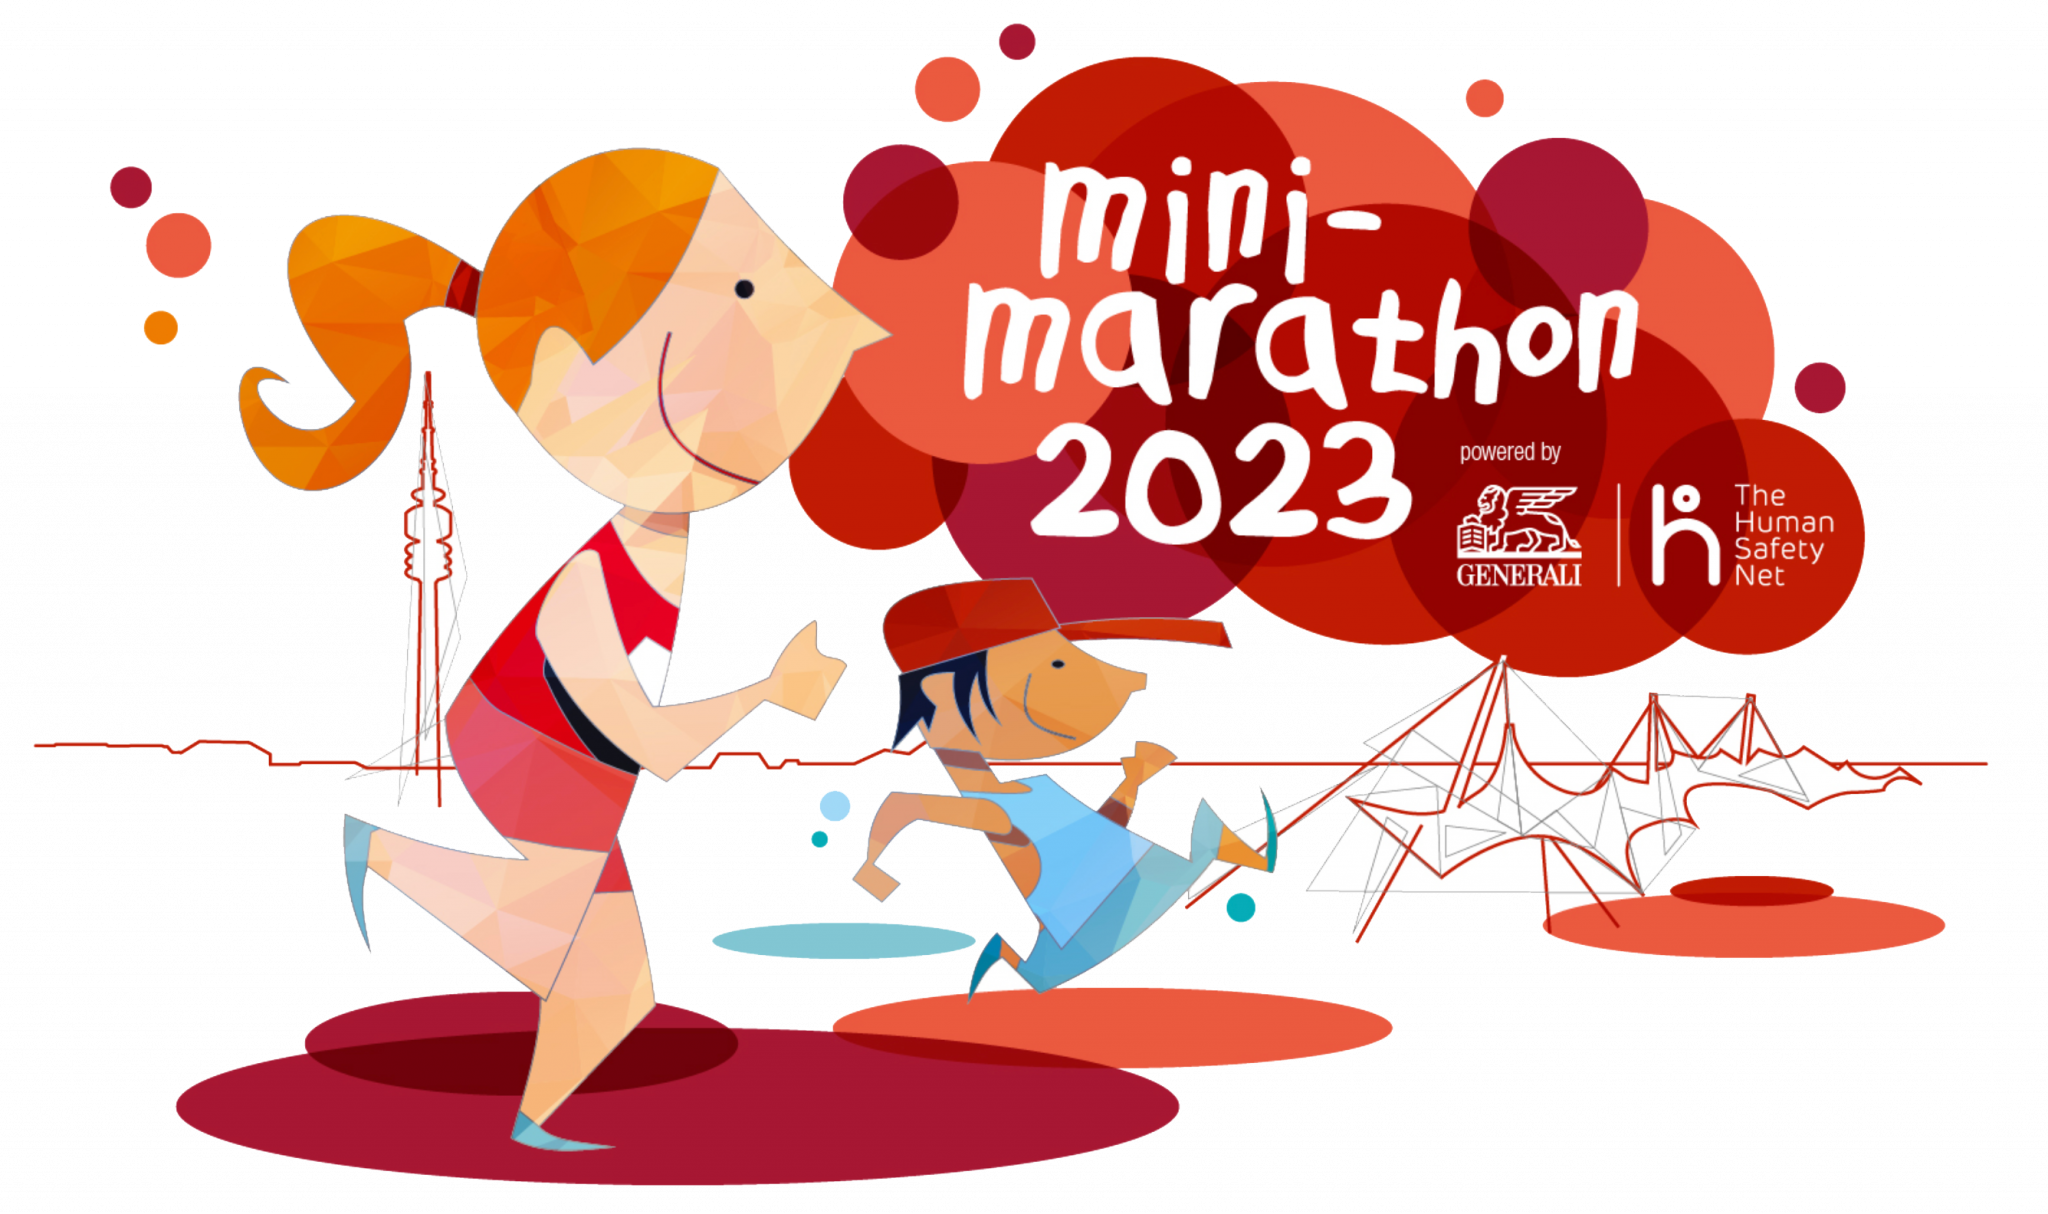 minimarathon in München 2023 Lauf dich fit!